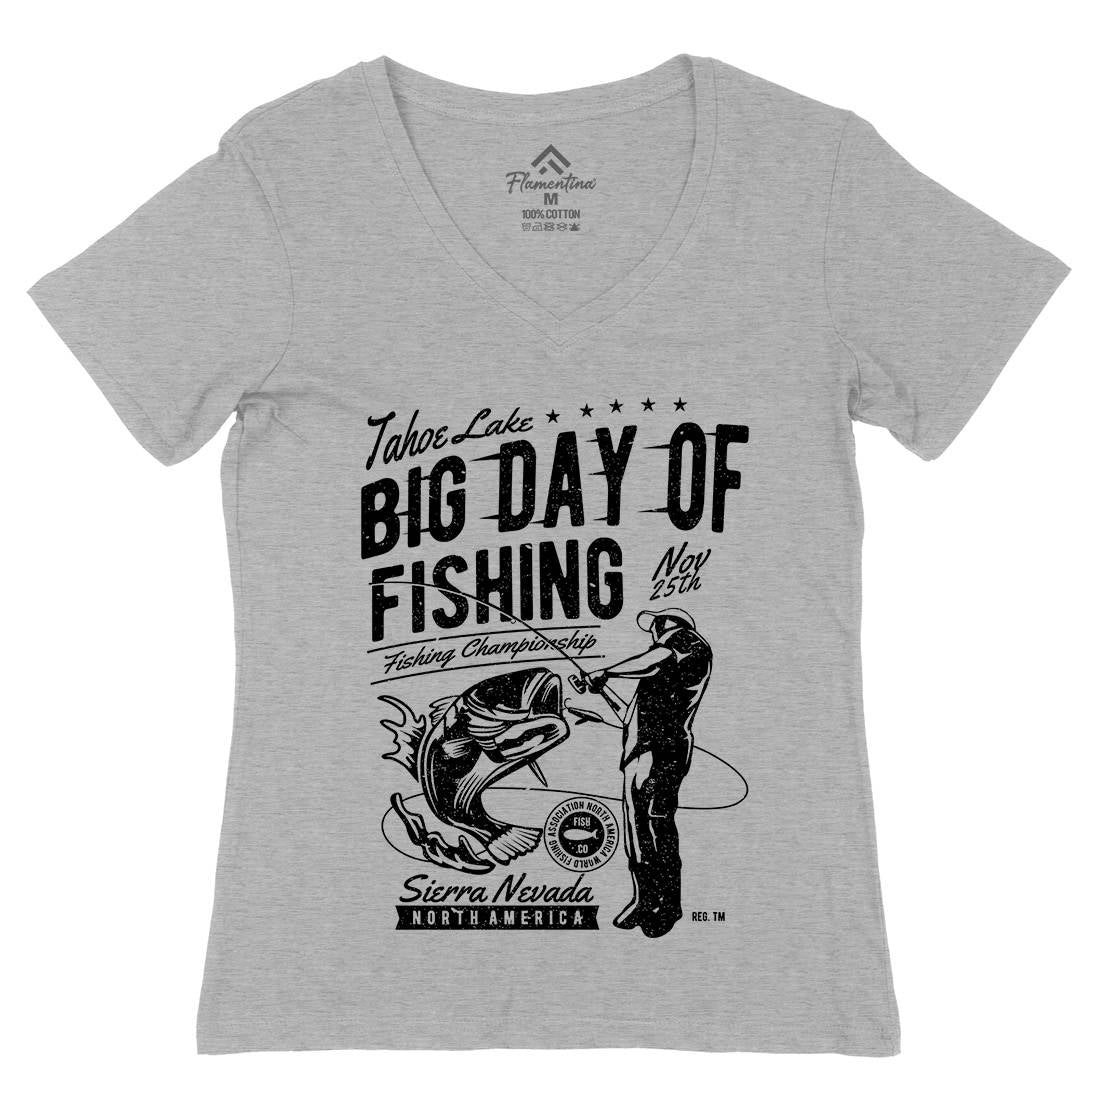 Big Day Of Womens Organic V-Neck T-Shirt Fishing A618